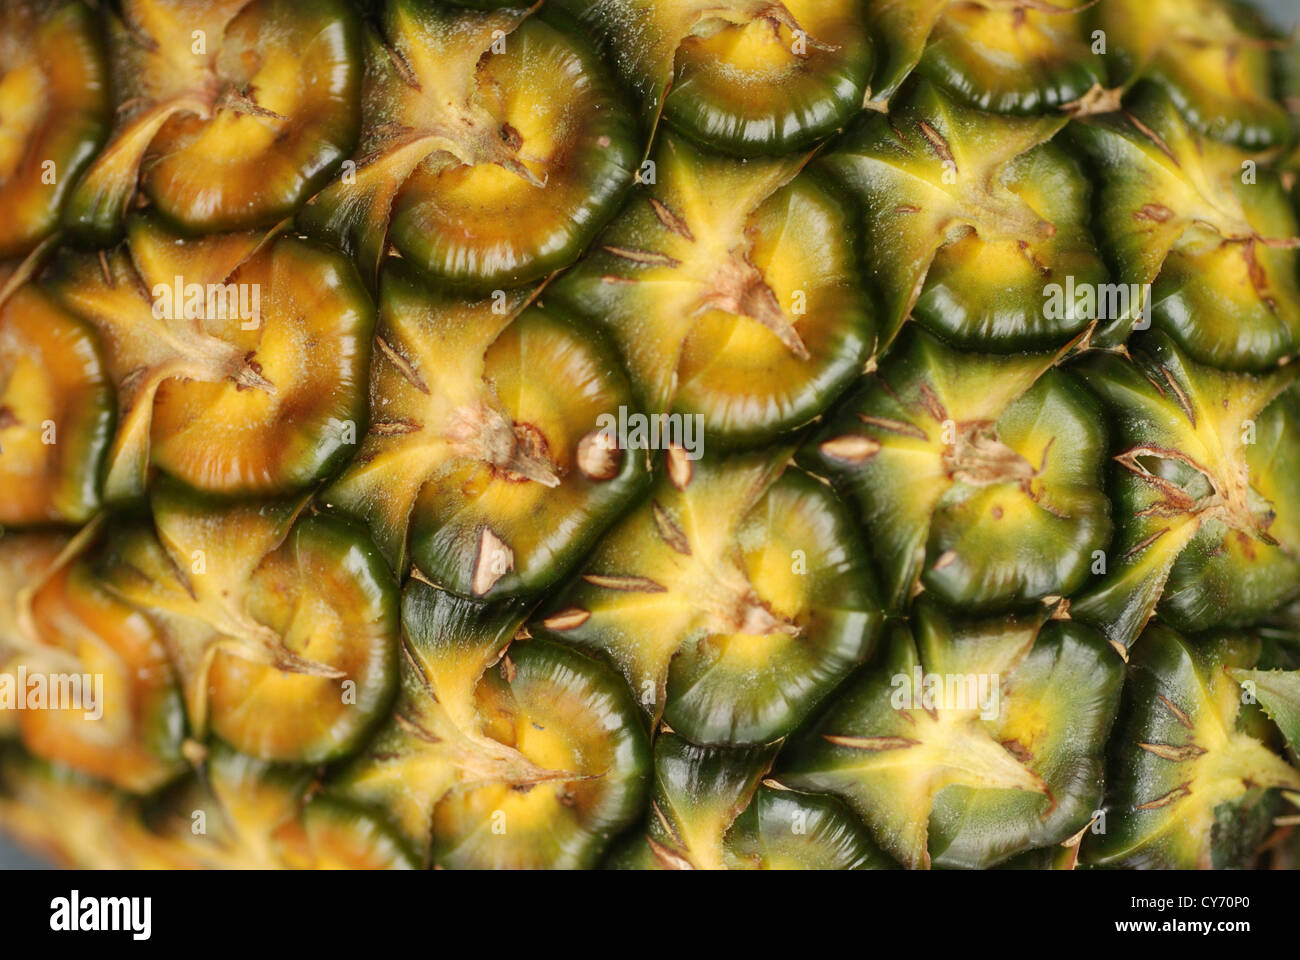 yellow pineapple skin Stock Photo